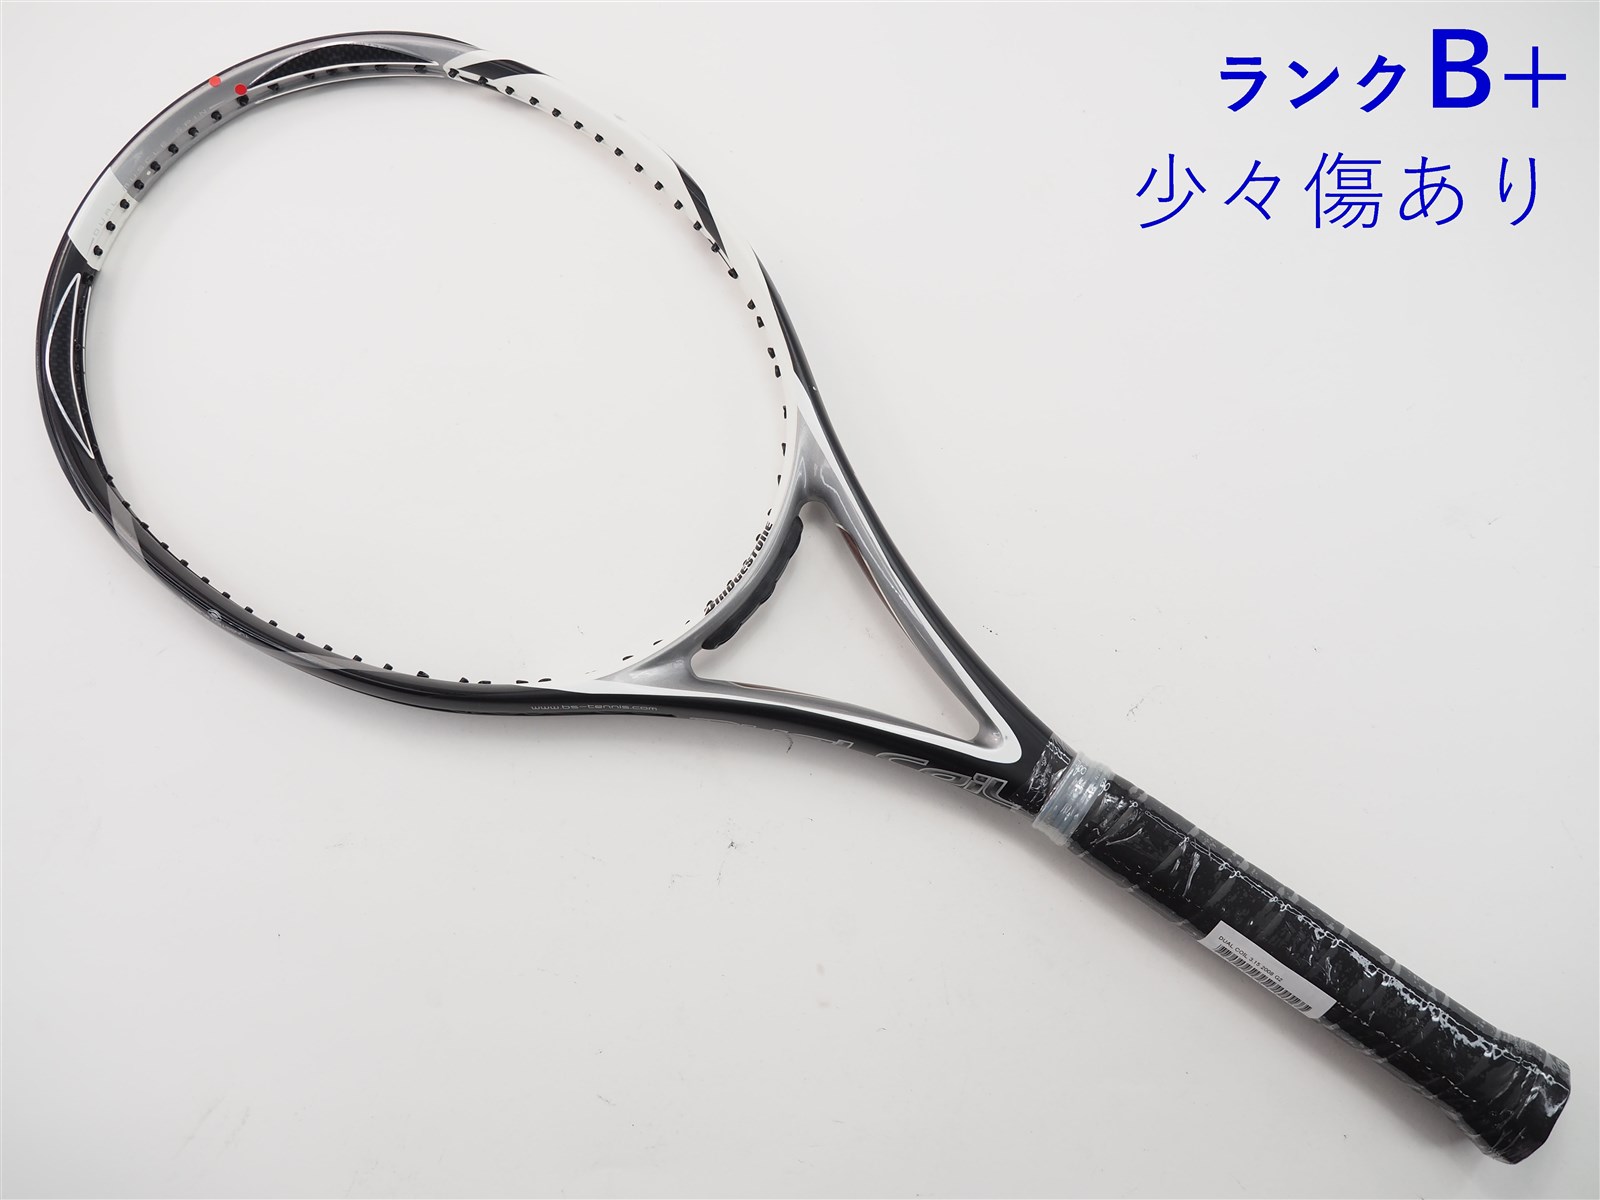 21-26mm重量テニスラケット ブリヂストン デュアルコイル 2.8 2007年モデル (G1)BRIDGESTONE DUAL COIL 2.8 2007